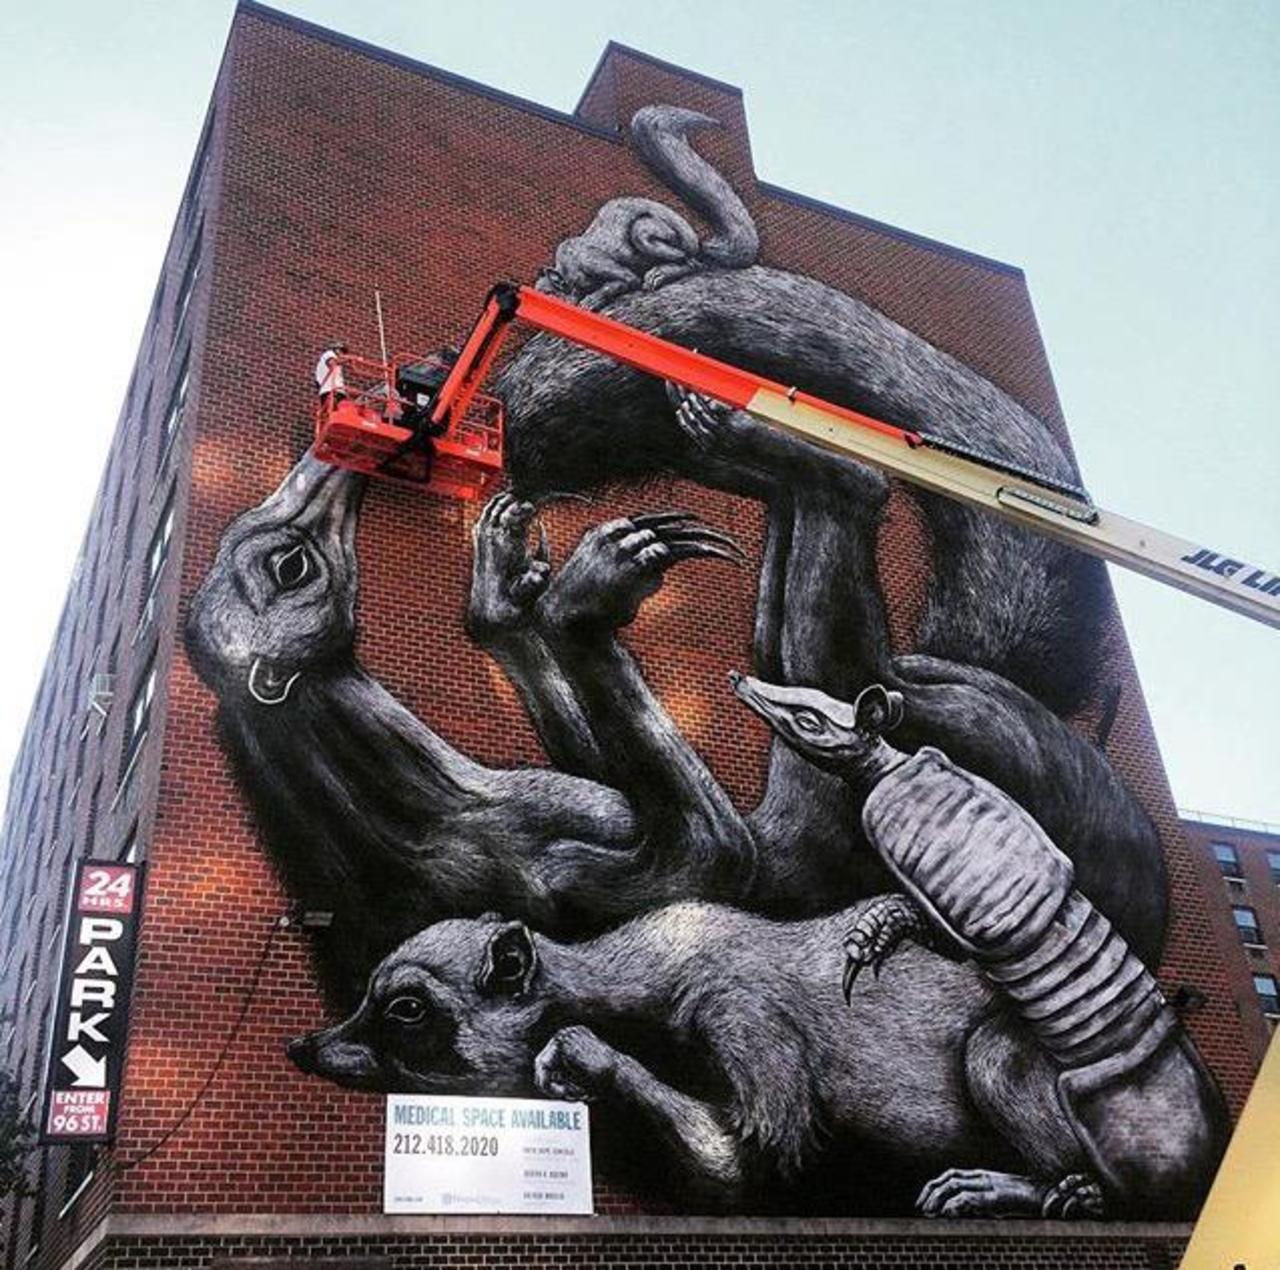 Street Art in progress by ROA in NYC

#art #graffiti #mural #streetart http://t.co/xO1rEUb8wK